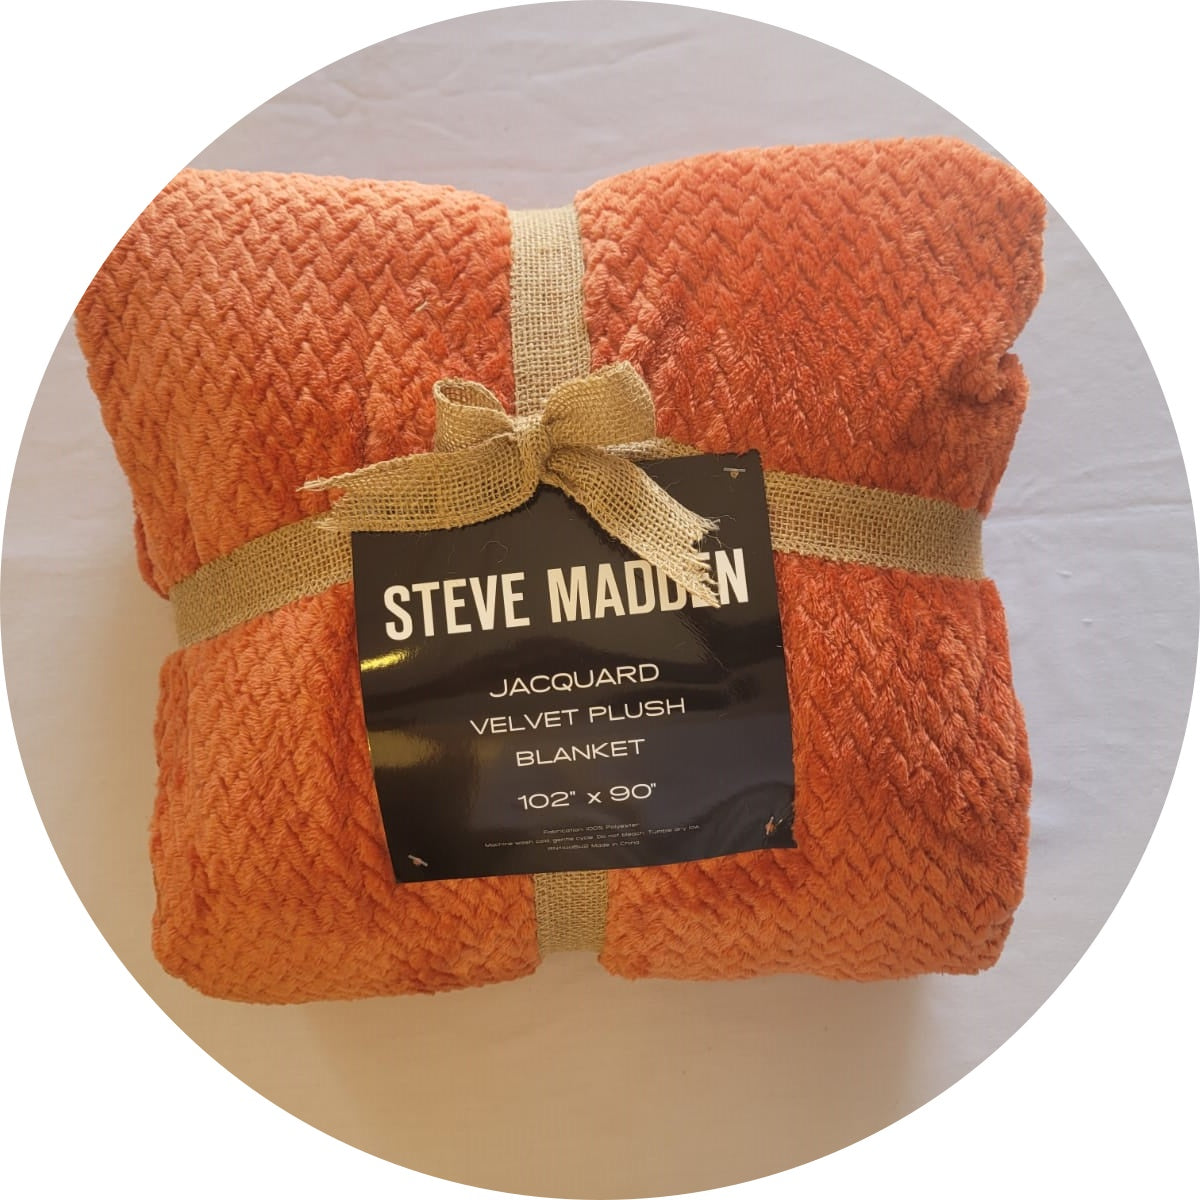 Steve Madden Jacquard Velvet Plush Blanket - King